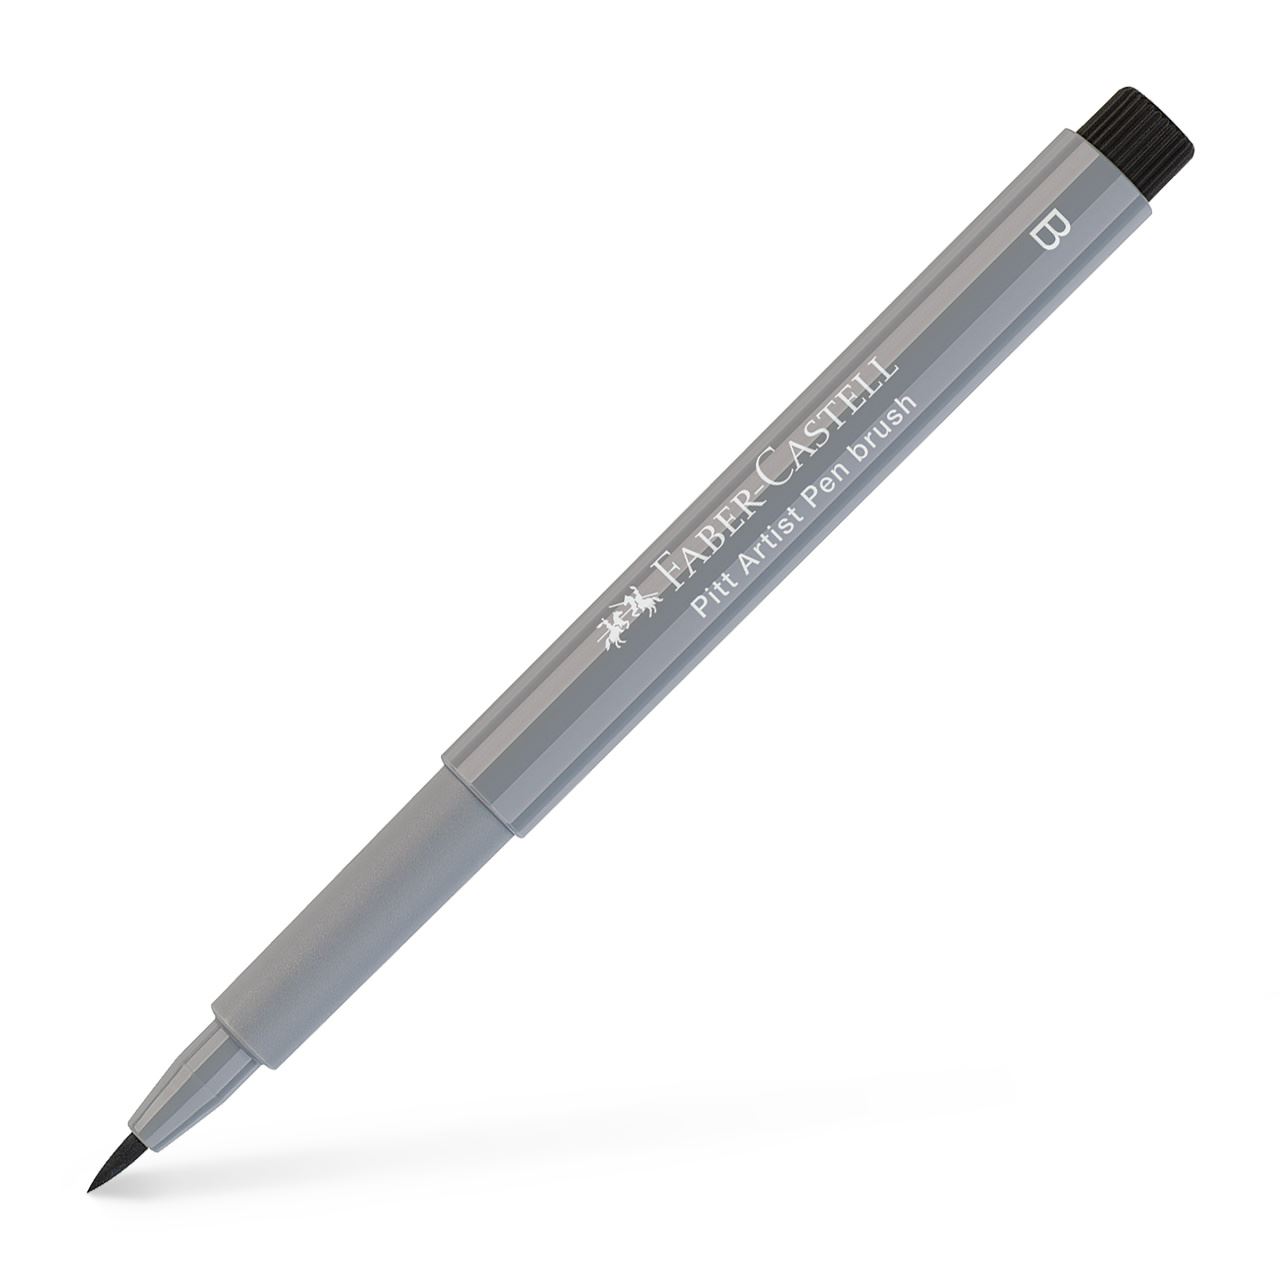 Faber-Castell - Rotulador Pitt Artist Pen Brush, gris frío III